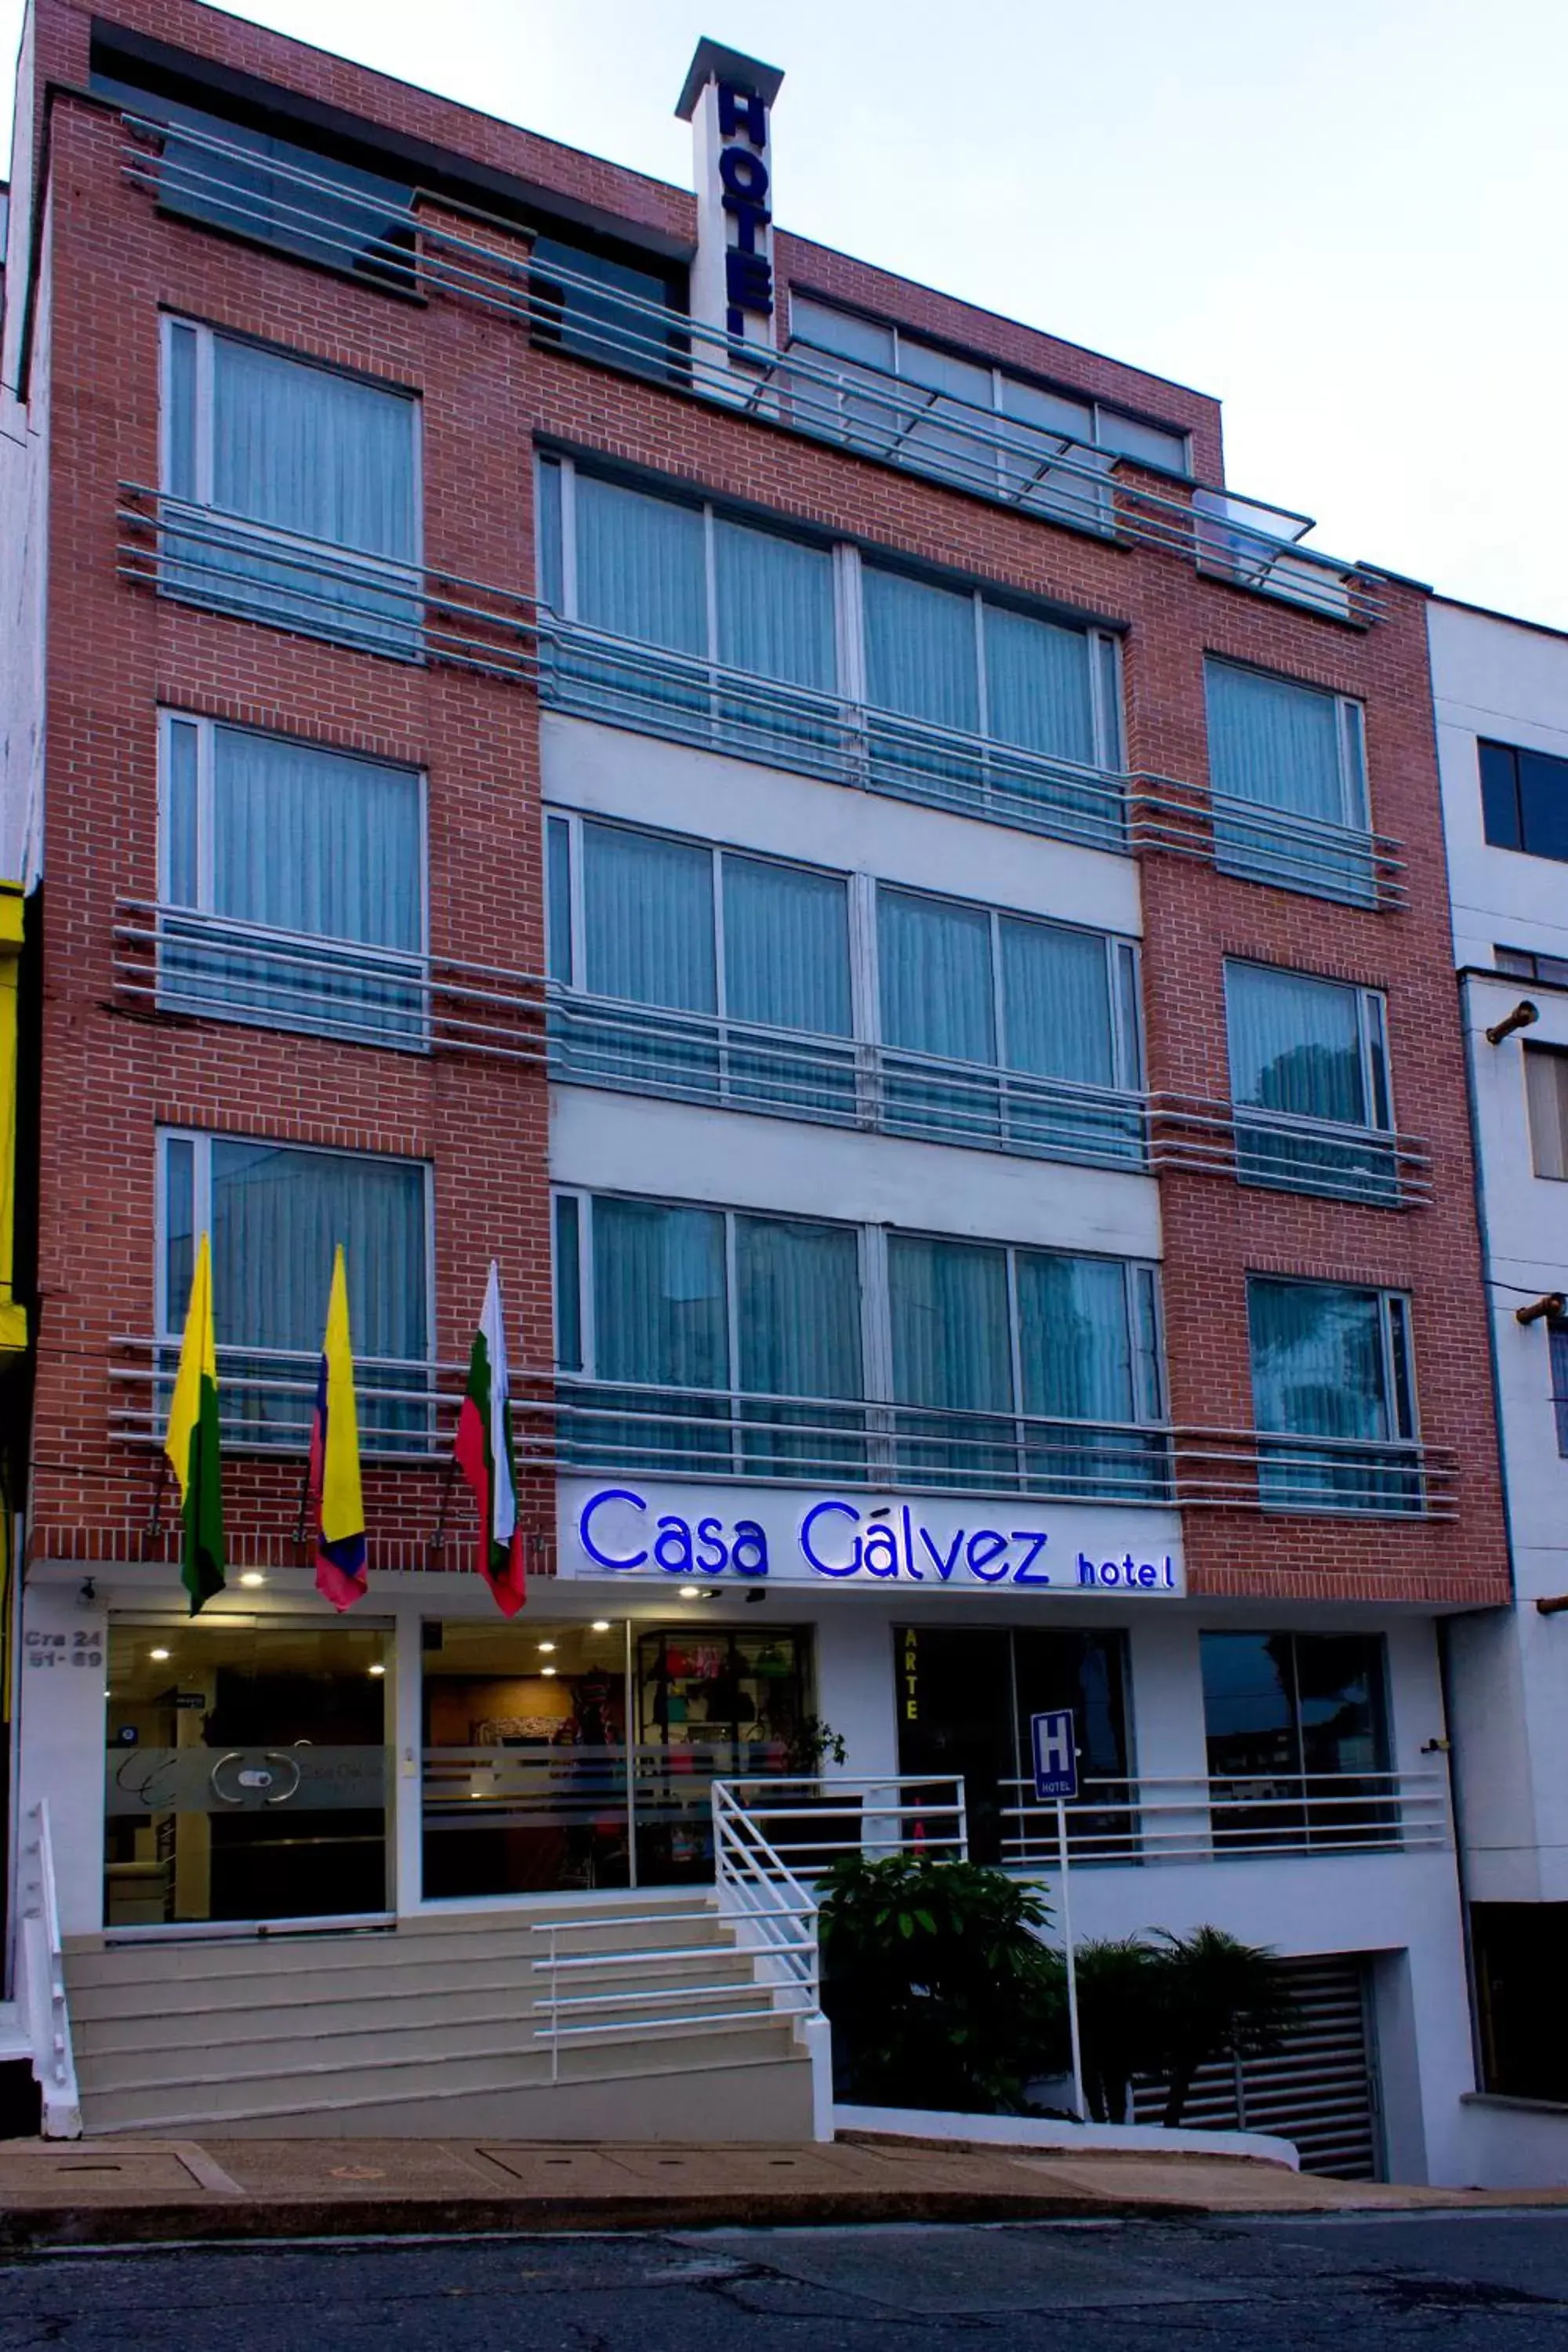 Facade/entrance in Hotel Casa Galvez